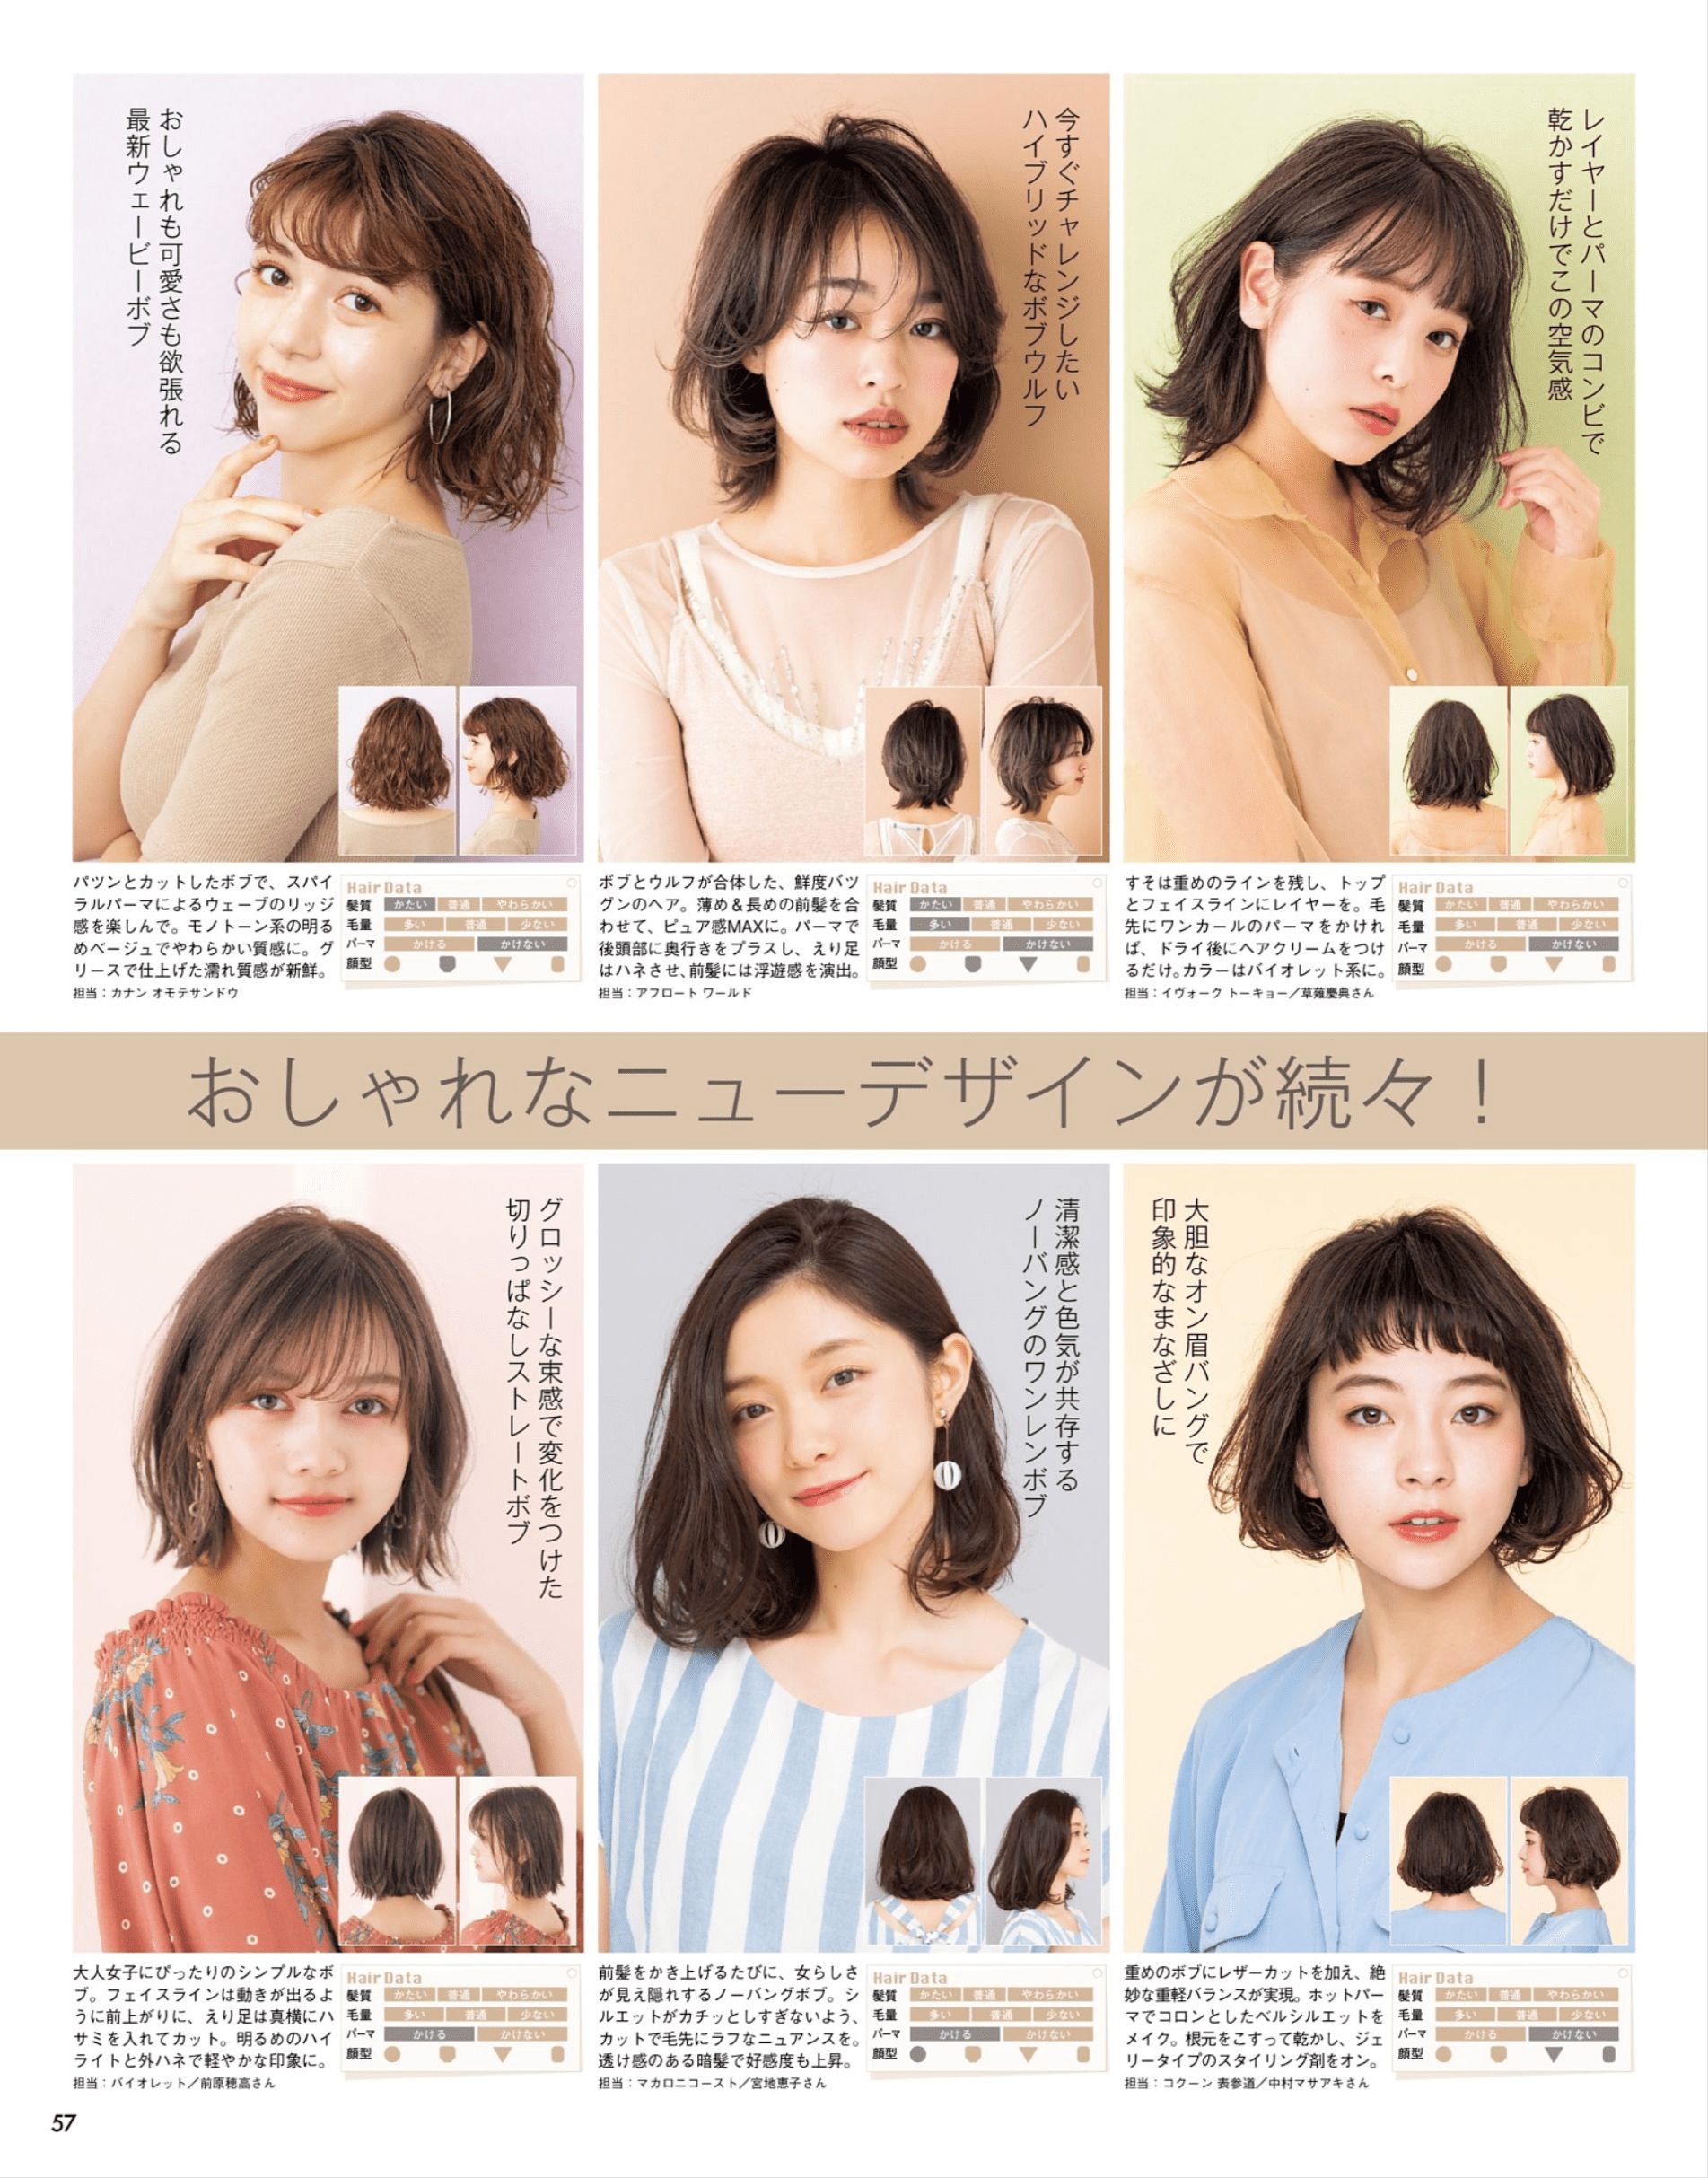 据说这本日本杂志收录了1500种发型!